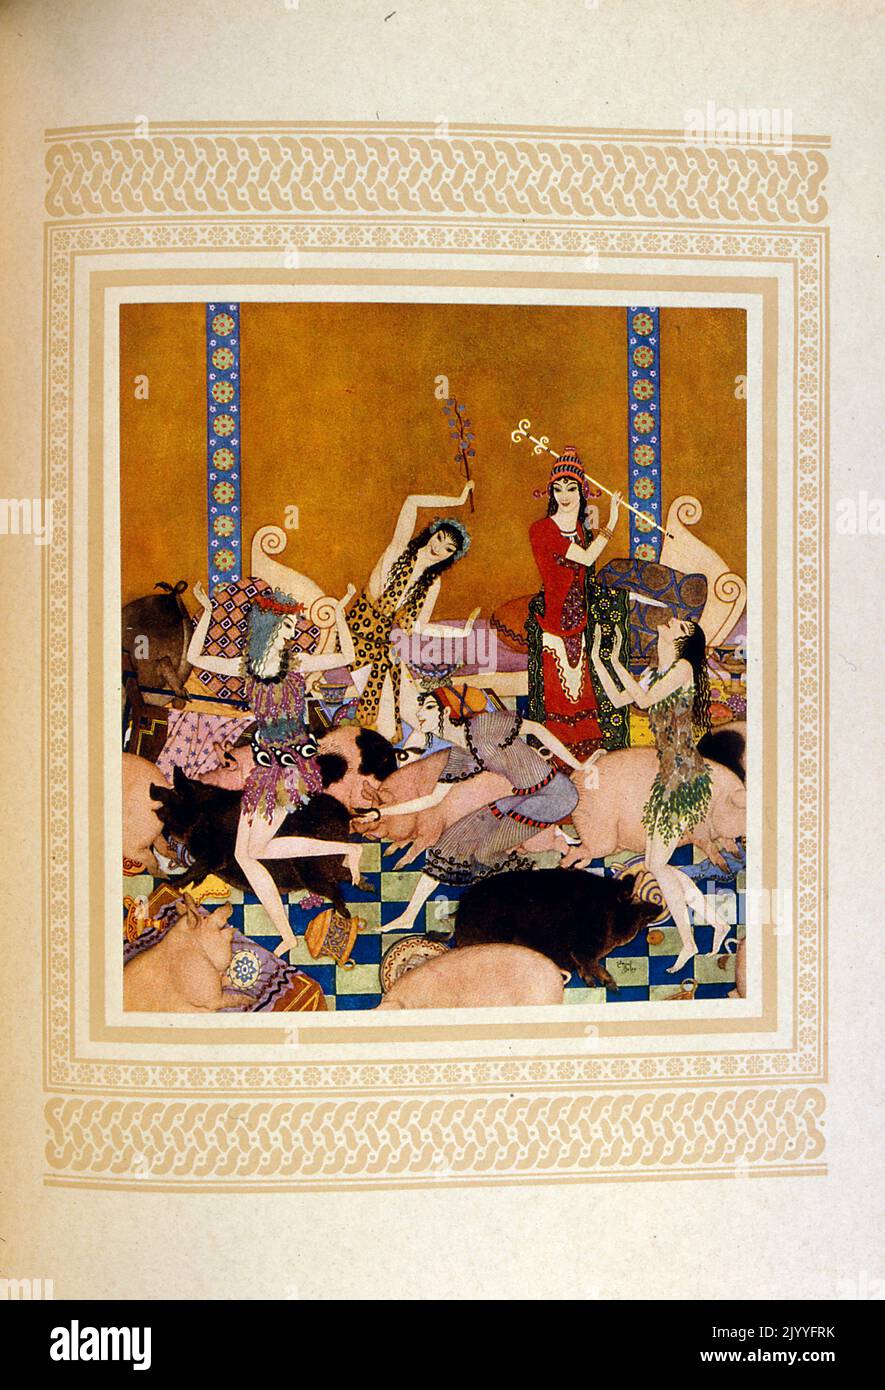 Illustration colorée des dames dansant avec des cochons dans l'épisode où Odysseus est piégé sur l'île avec Circe. Illustré par Edmund Dulac (1882-1953), un magazine naturalisé français britannique et illustrateur de livres. Banque D'Images